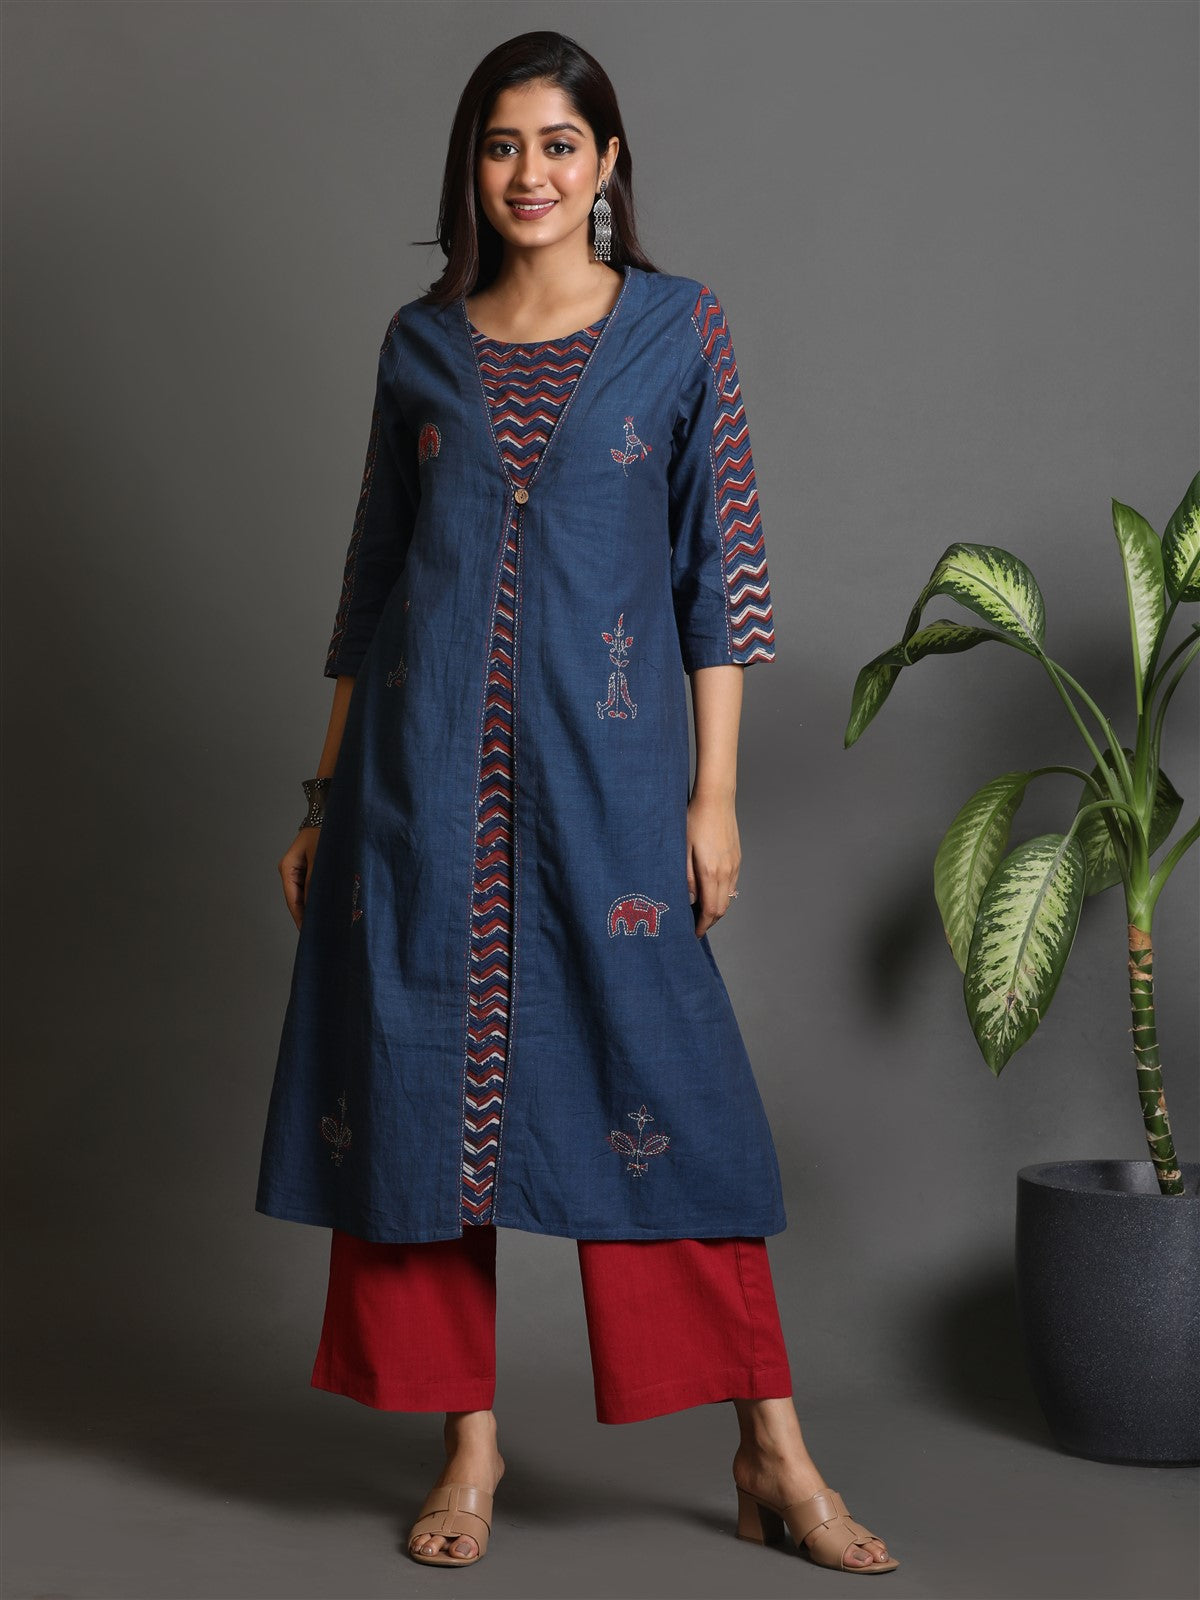 Indigo Khadi Kurta With Jacket Style All Over Kantha Hand Embroidery Detailing